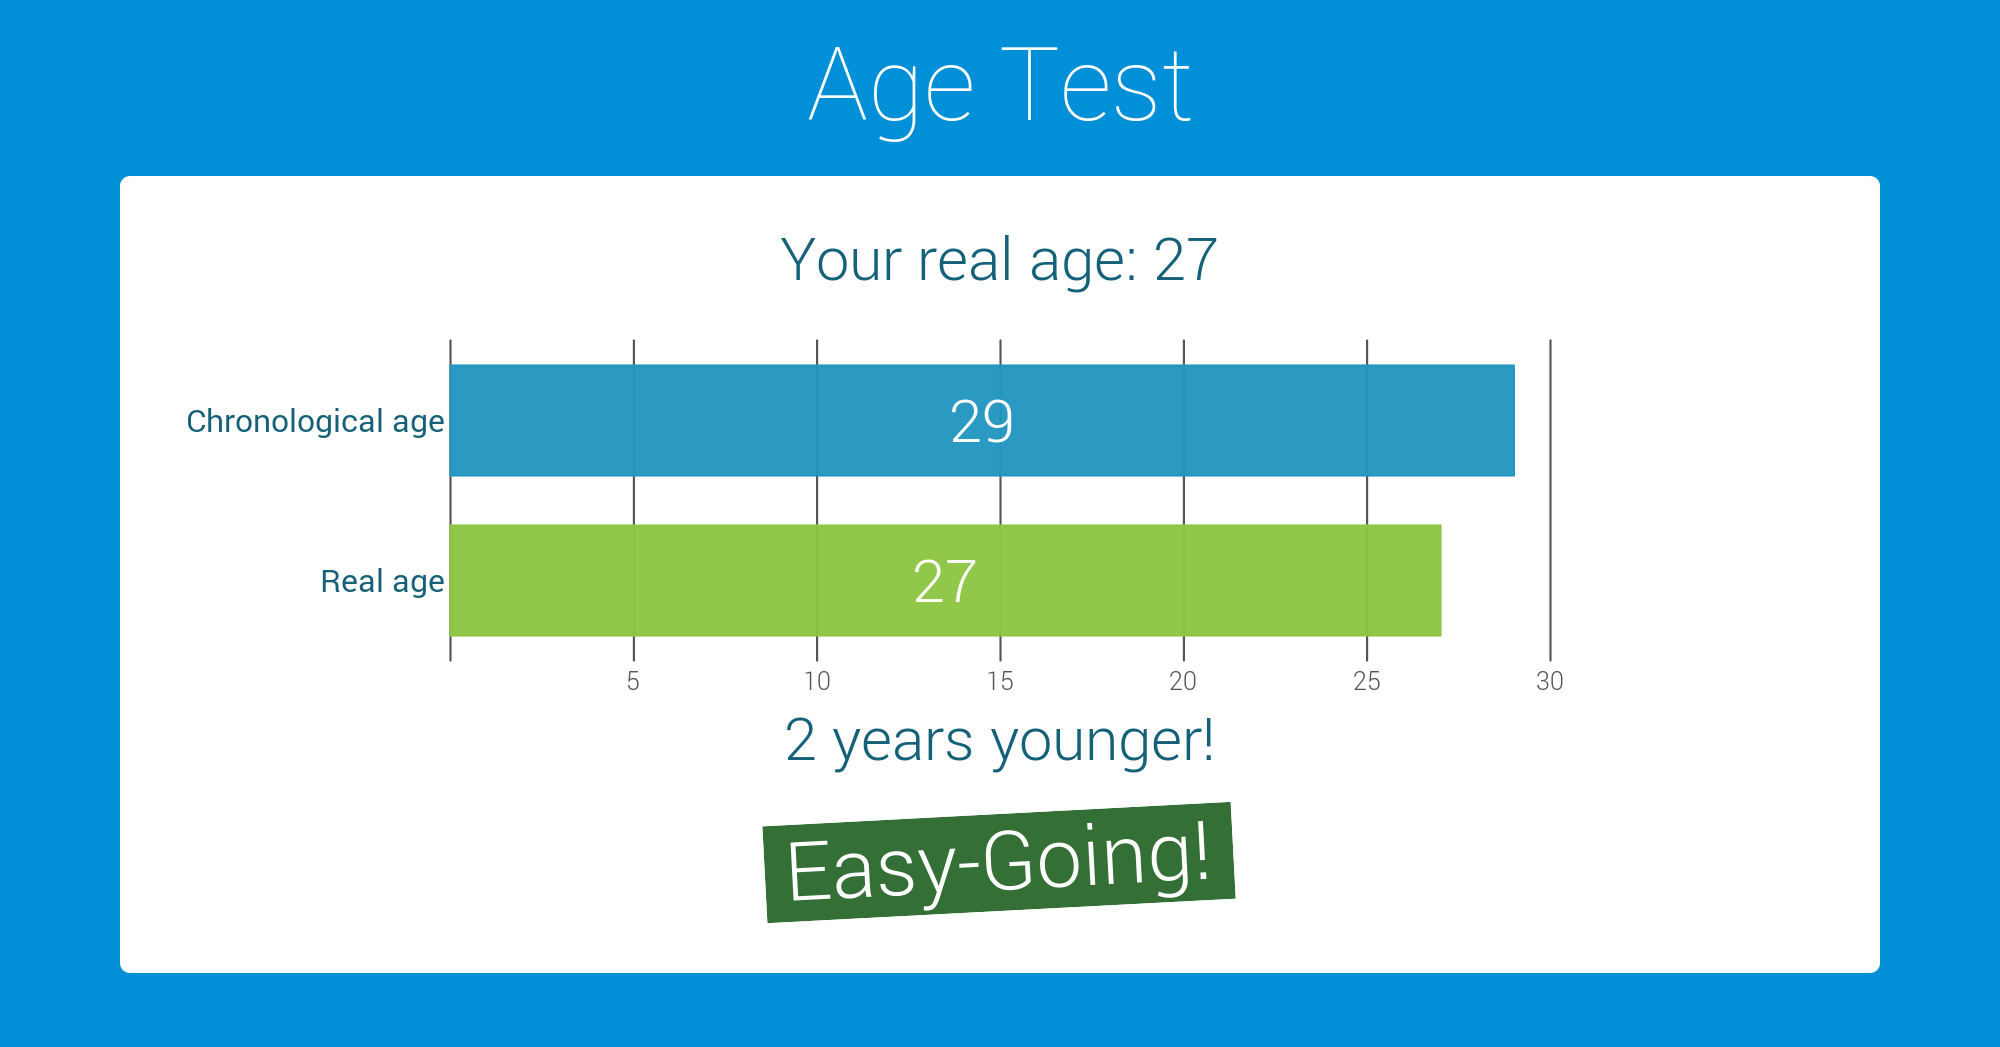 6mb6j7 1 - Take the "Age Test"